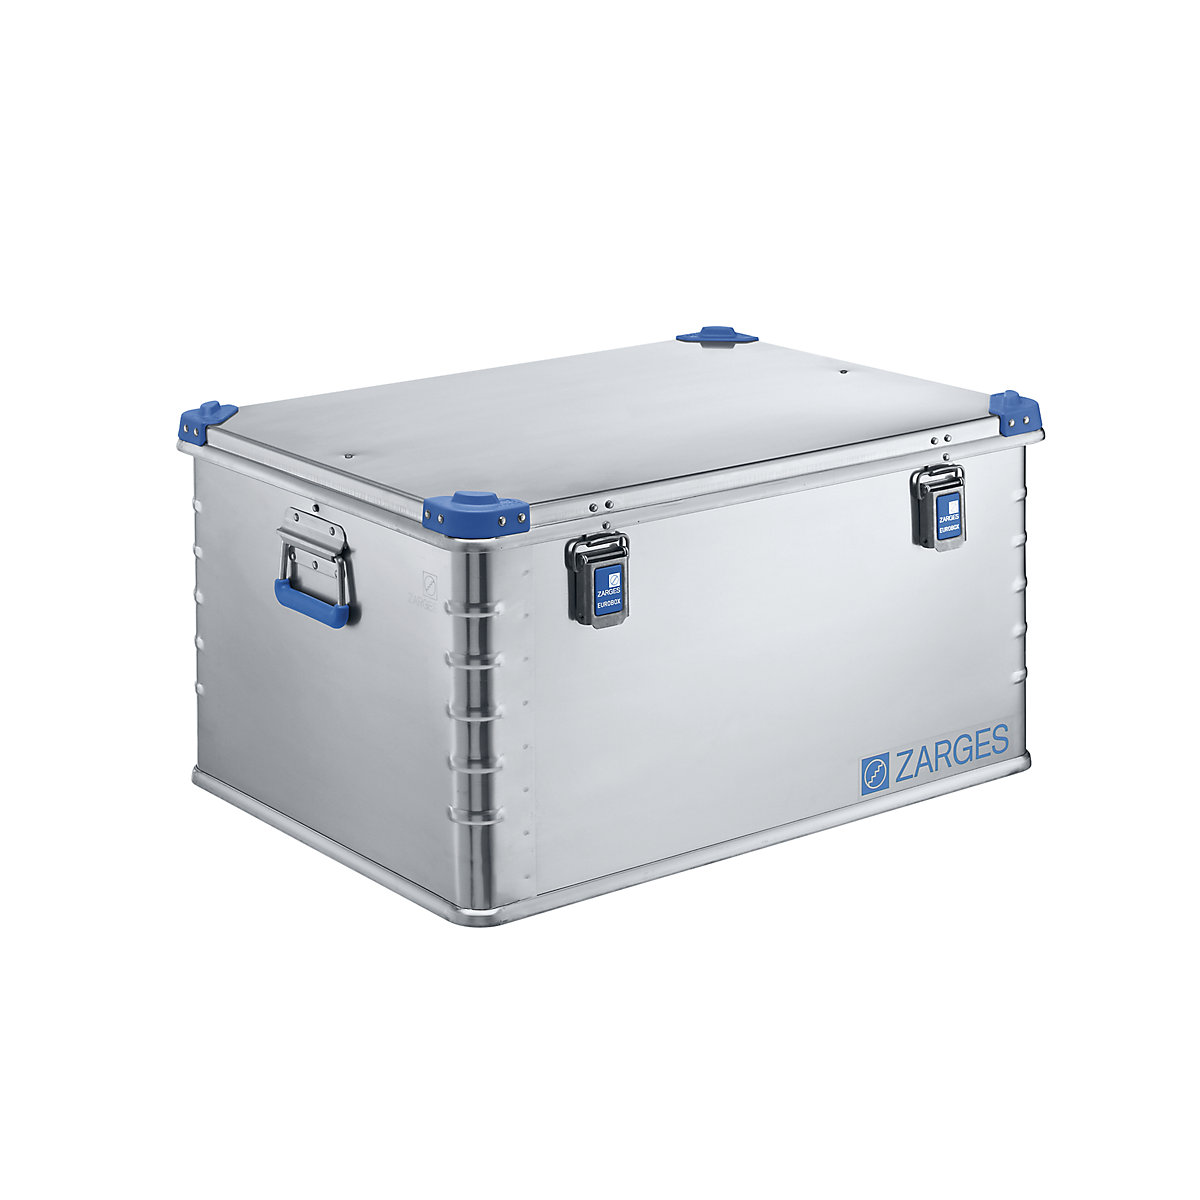 ZARGES Aluminium-Universalbox, Inhalt 157 l, Außenmaß LxBxH 800 x 600 x 410 mm